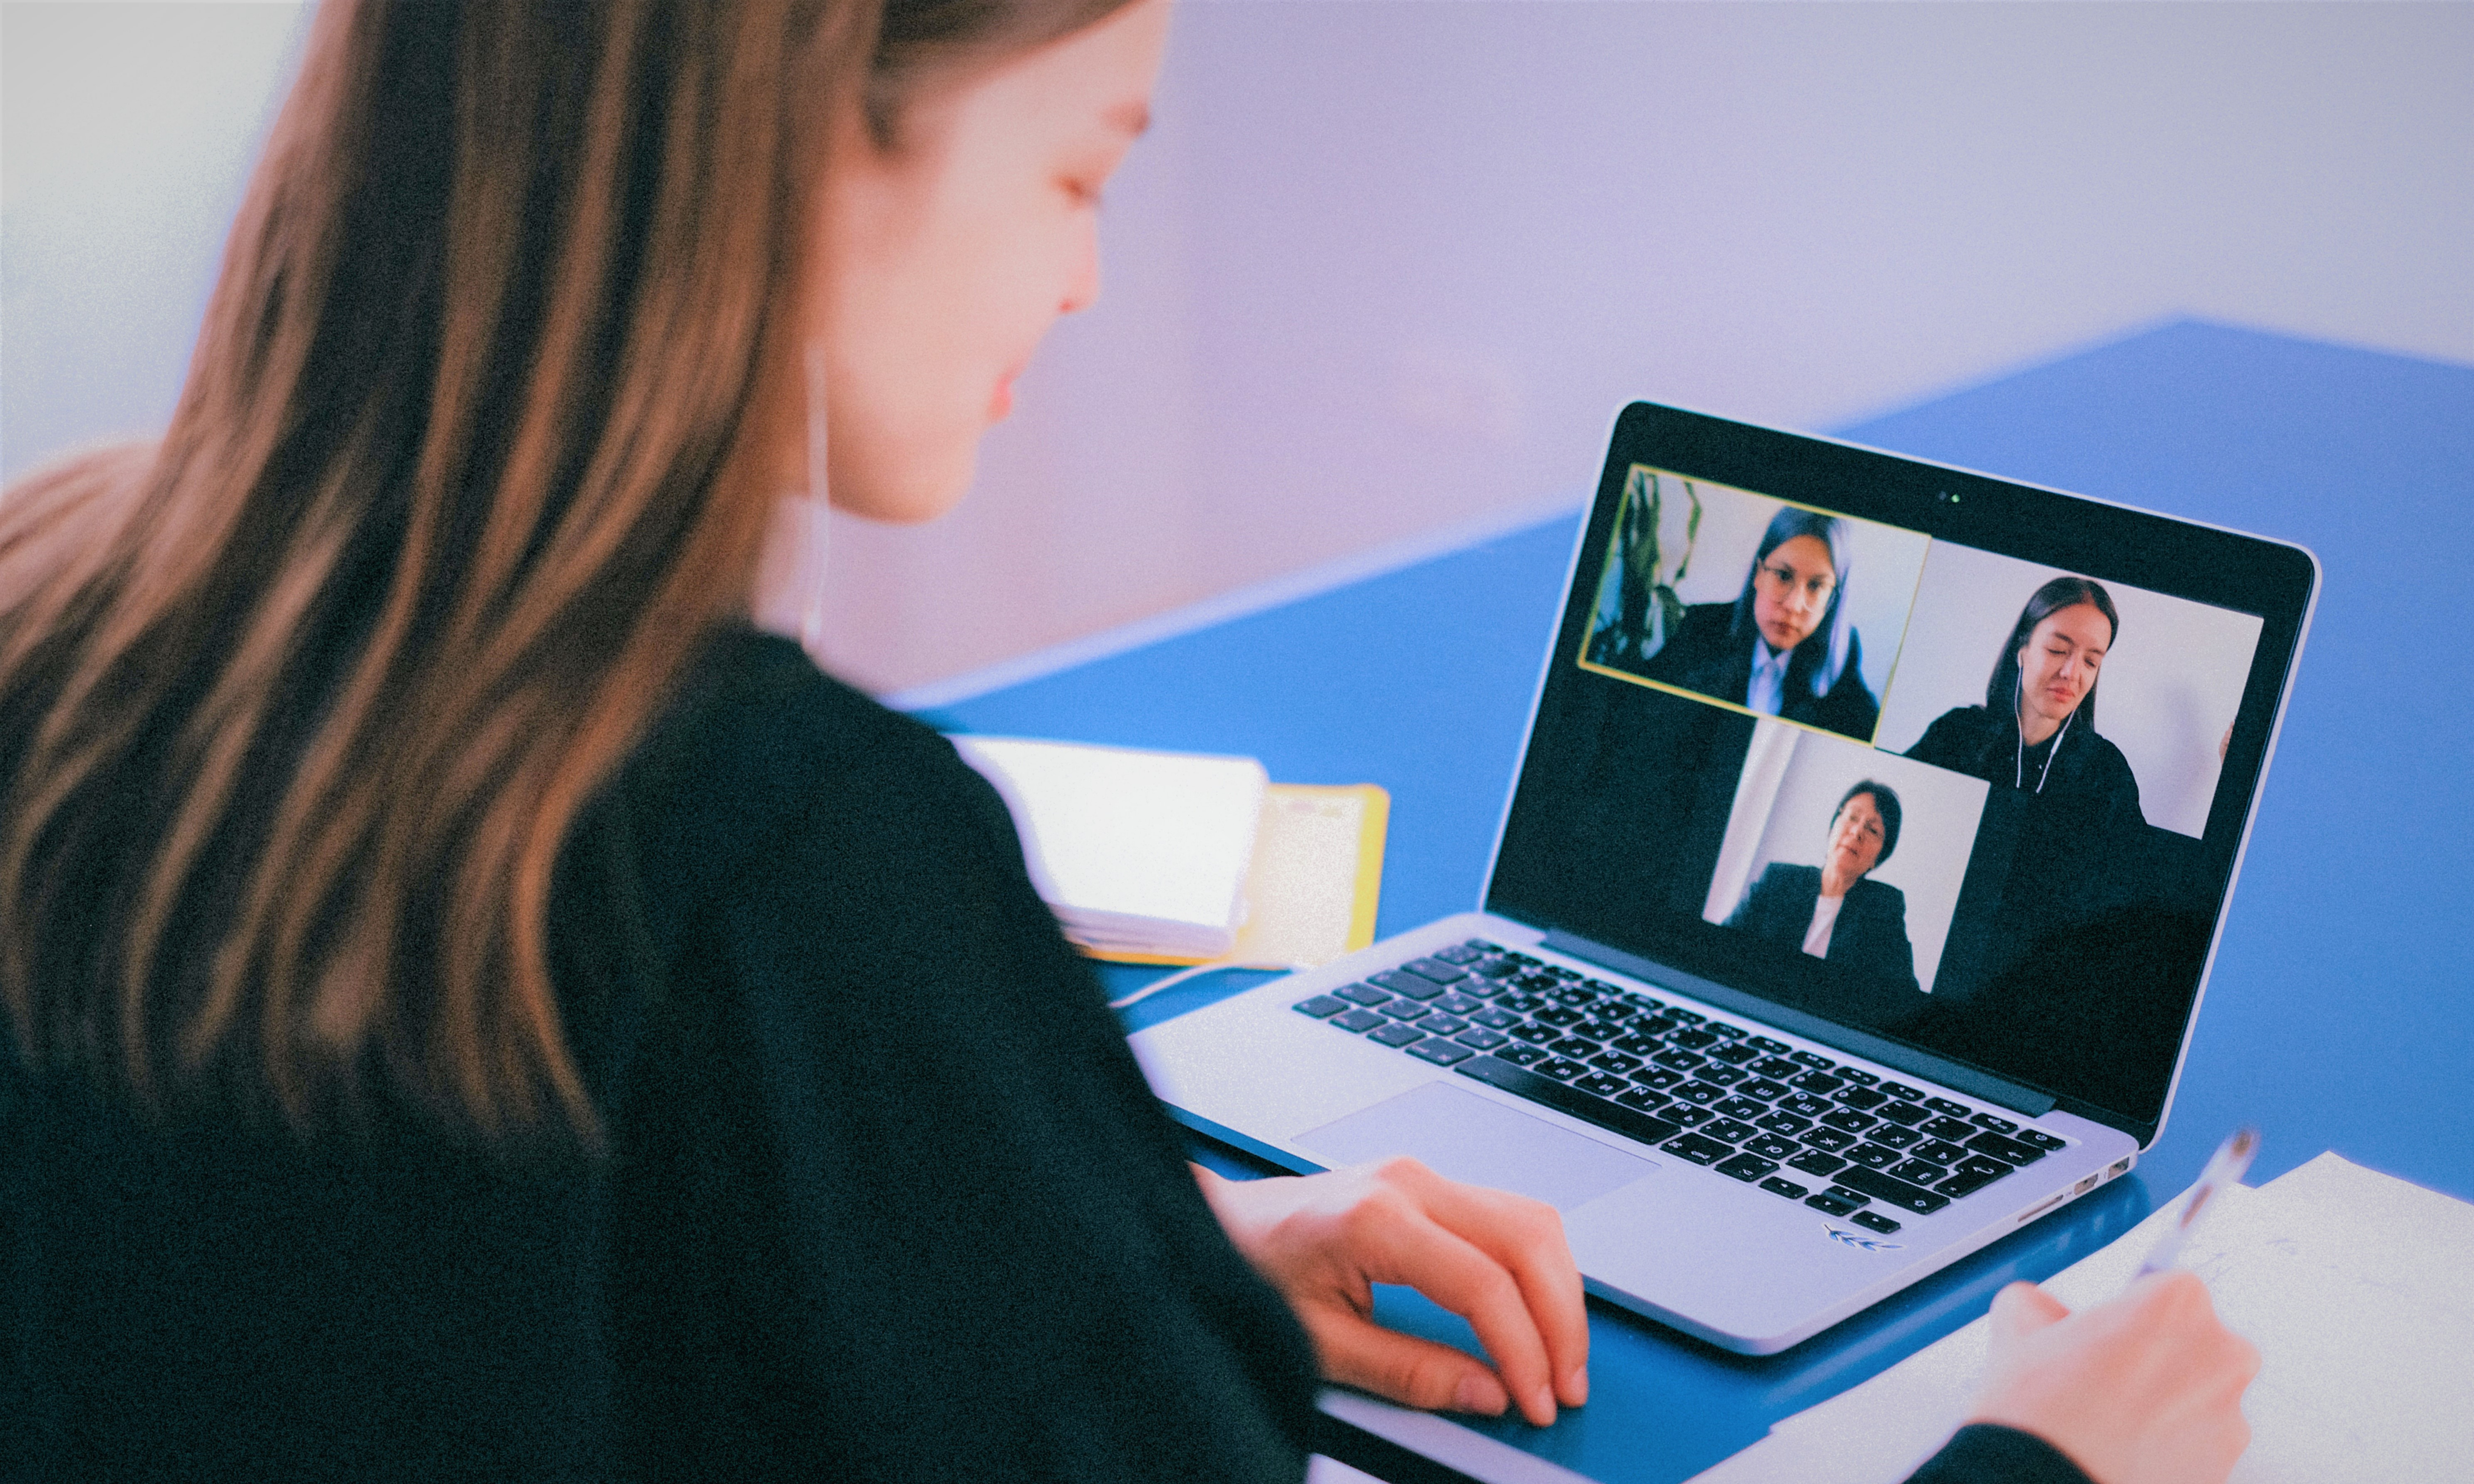 Frau am Laptop auf dem eine Videokonferenz mit 3 Personen läuft.